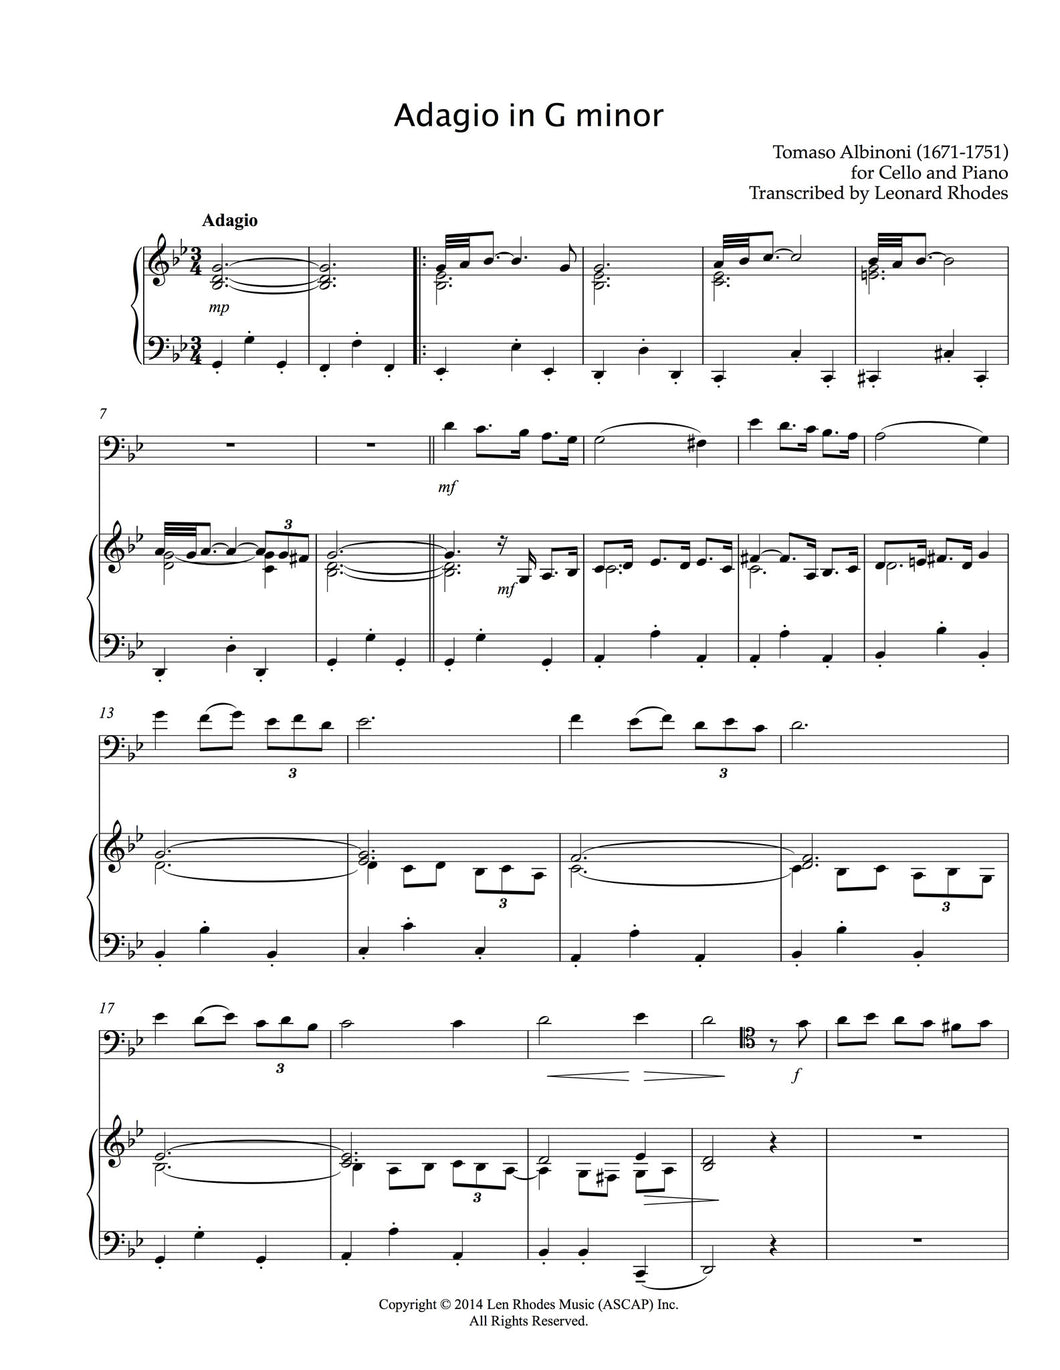 Adagio in G minor, Albinoni - Cello and Piano